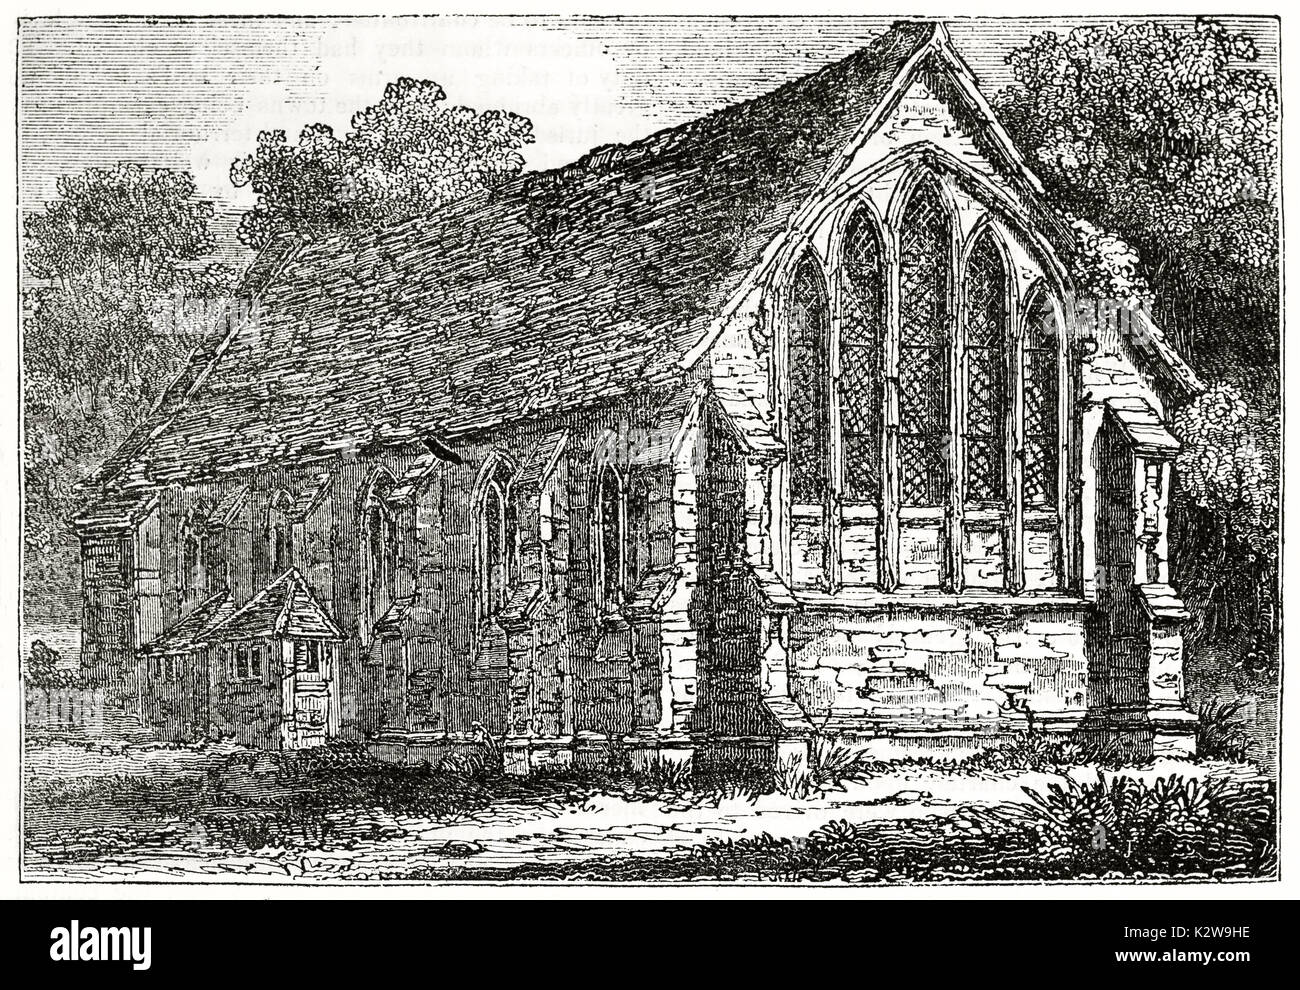 Alte Ansicht der Guidhall Chichester, West Sussex, England. Von unbekannter Autor, auf Penny Magazine, London, 1835 veröffentlicht. Stockfoto